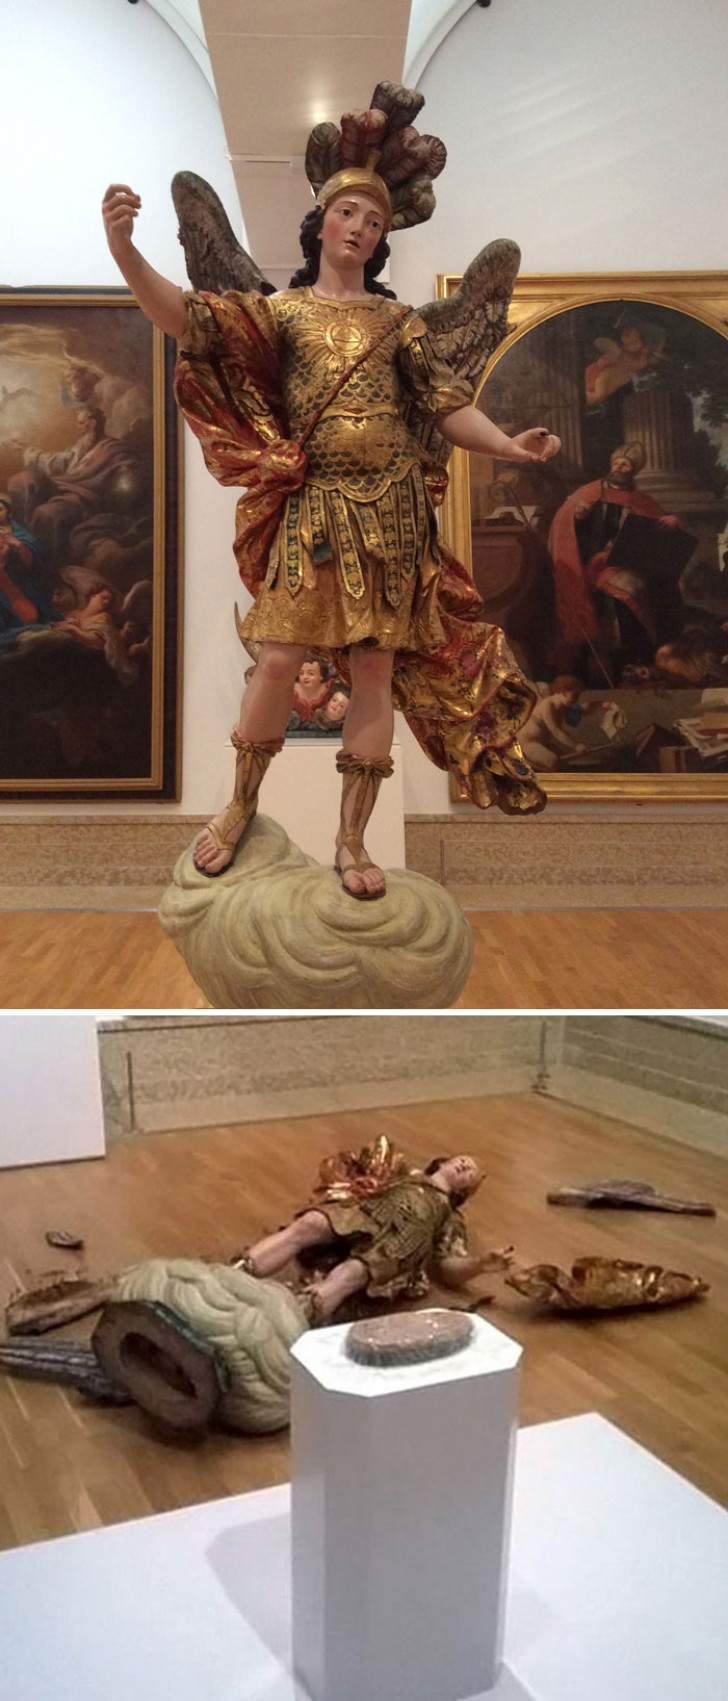 A Lisbonne, un touriste a tenté de faire un selfie avec la statue de Saint Michel, mais a causé la chute de la précieuse sculpture !